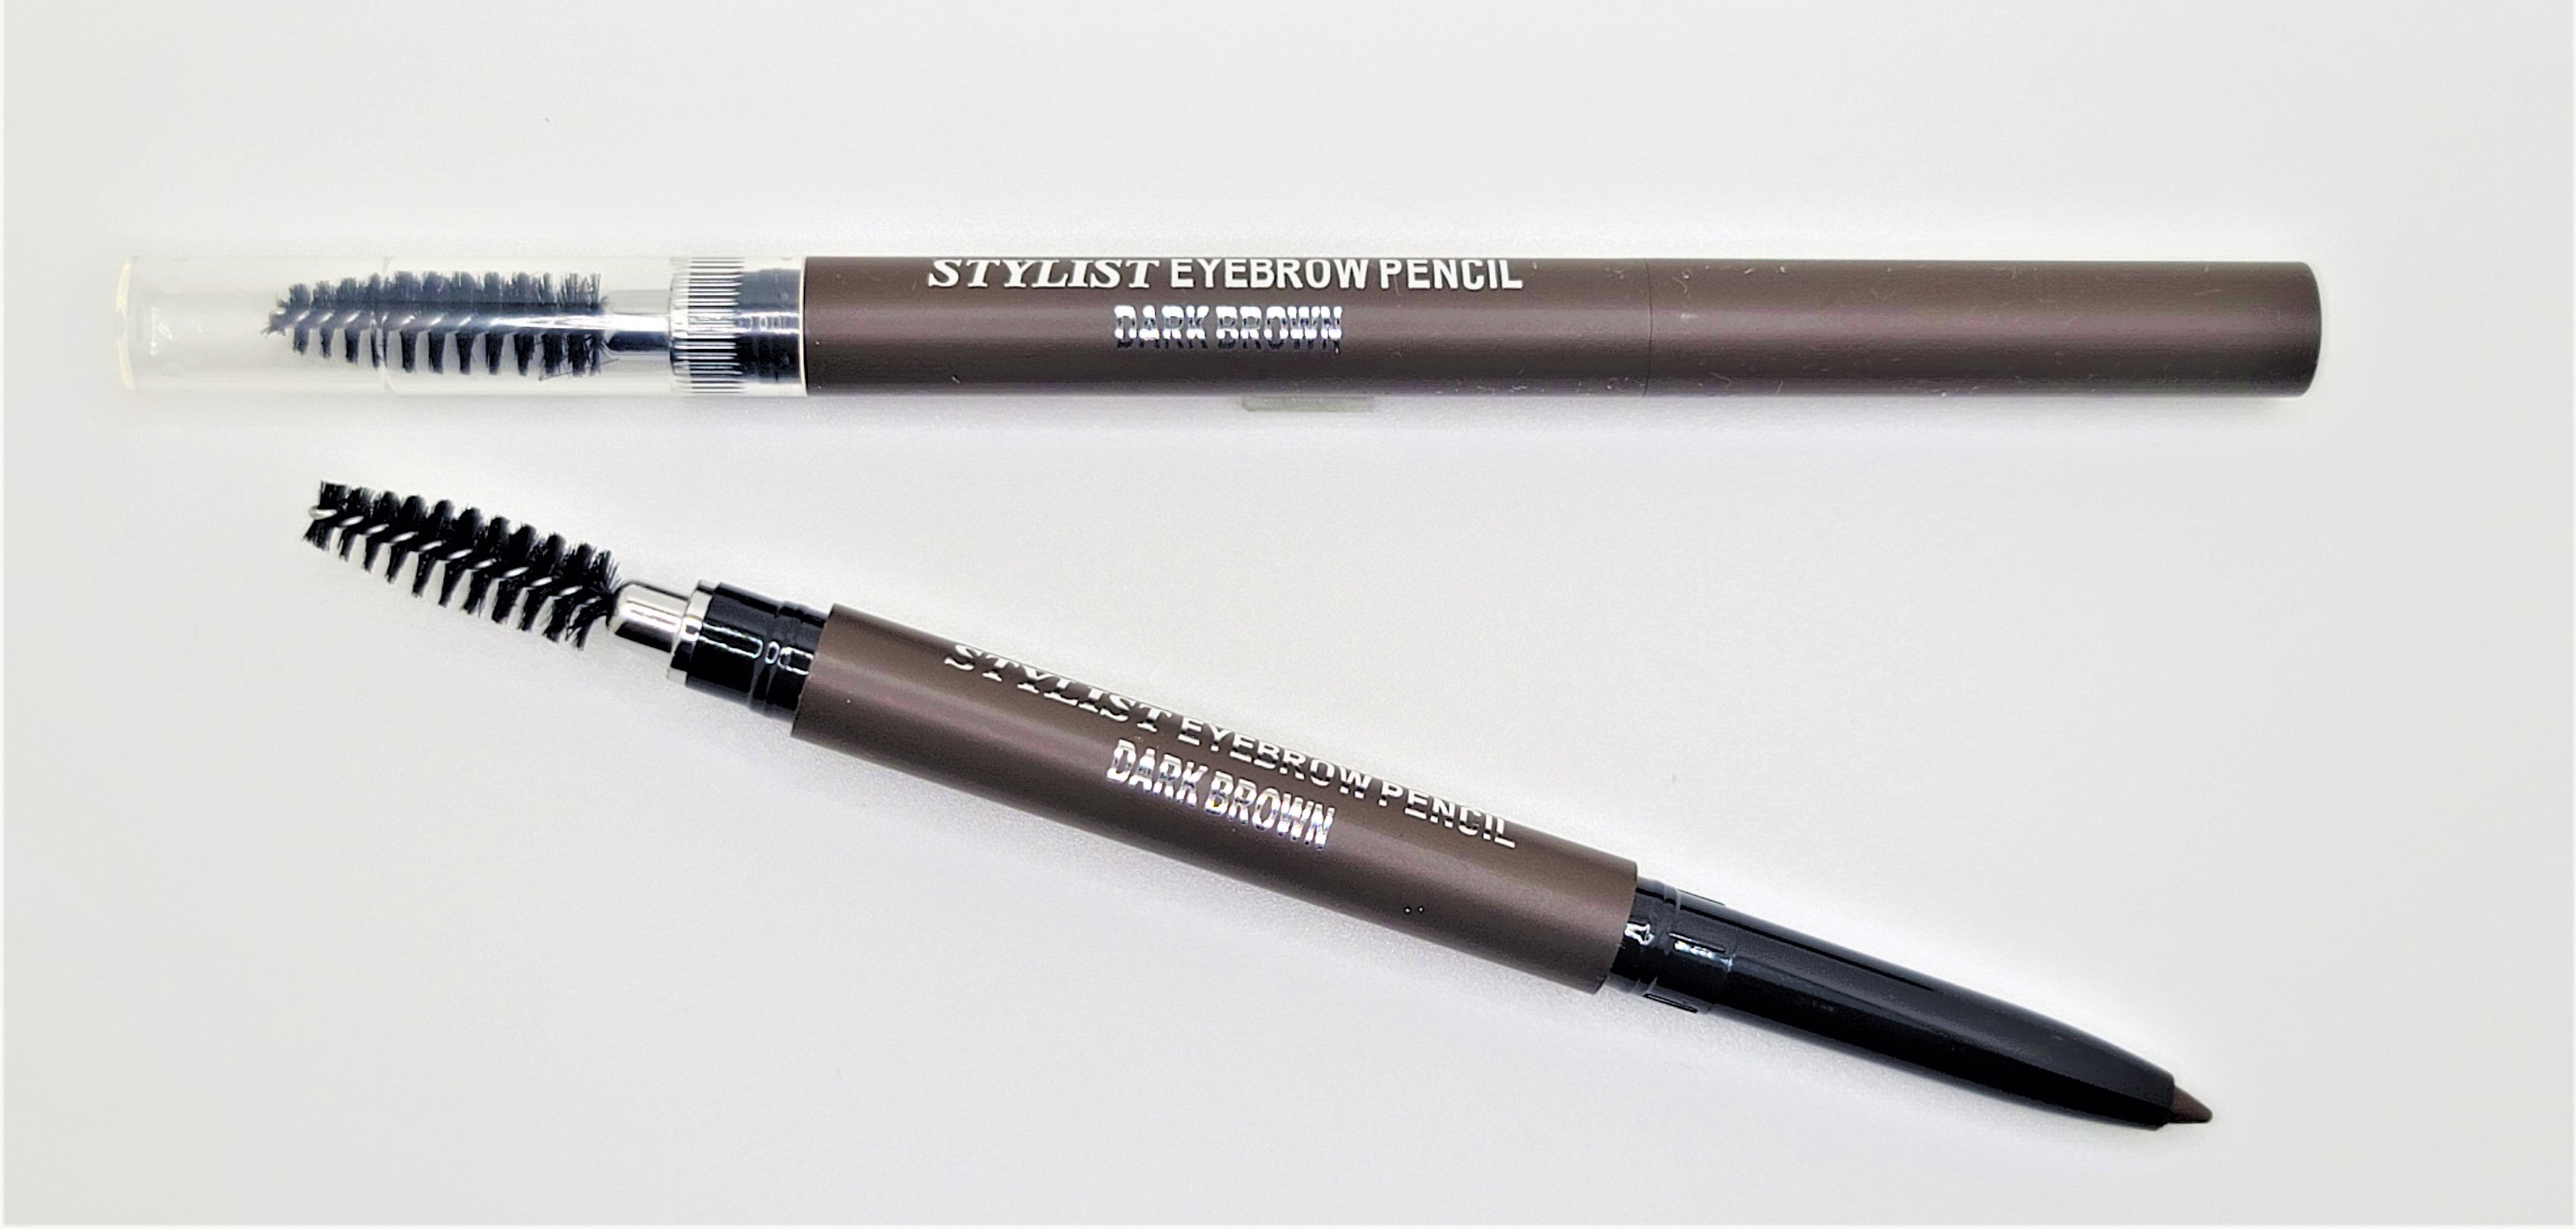 603 Stylist Eyebrow Pencil Dark Brown